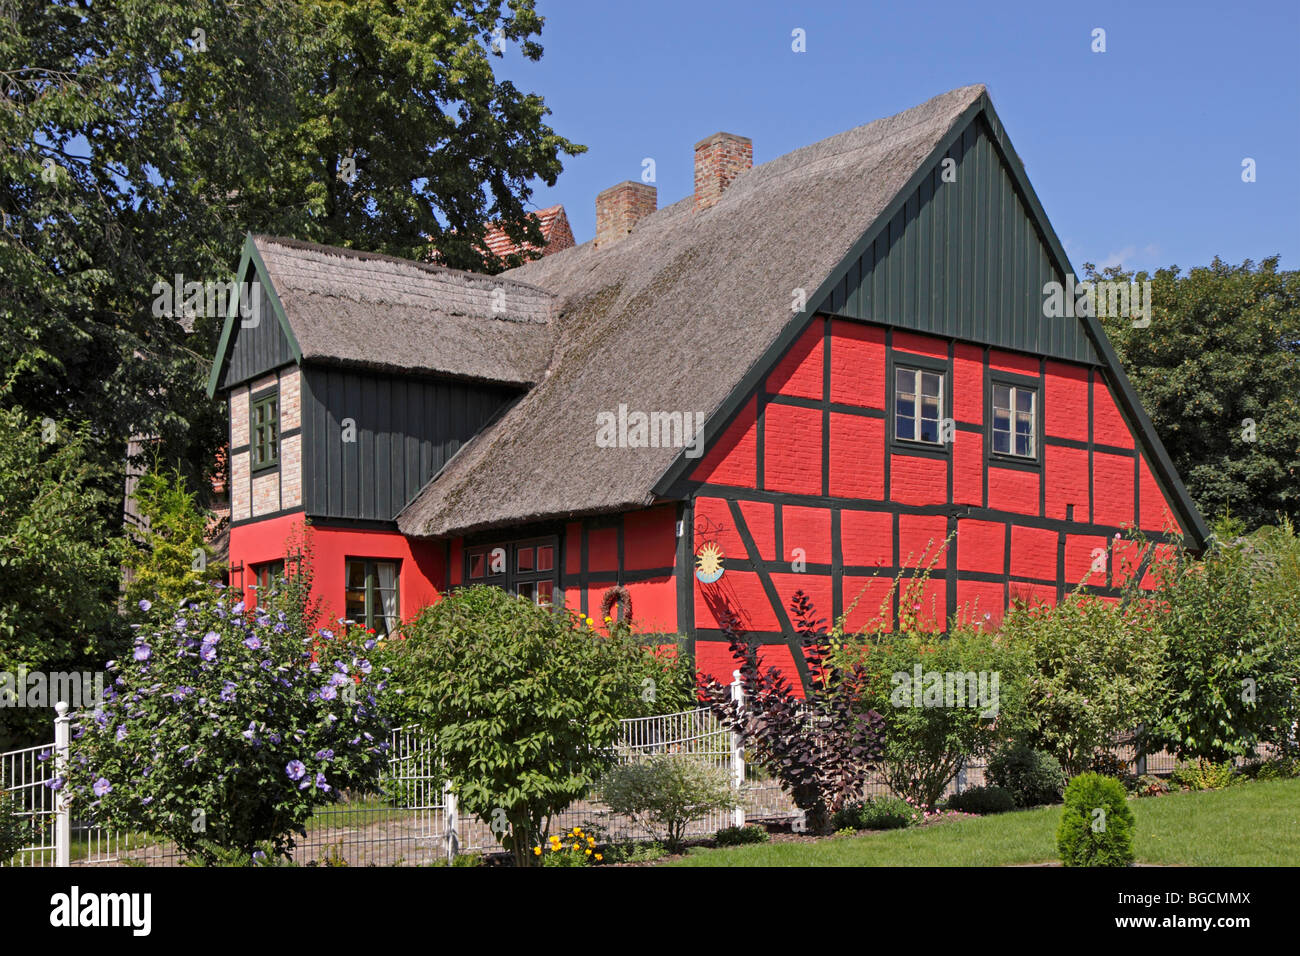 reetgedeckten Fachwerkhaus in Neu Boltenhagen in der Nähe von Greifswald, Mecklenburg-West Pomerania, Deutschland Stockfoto